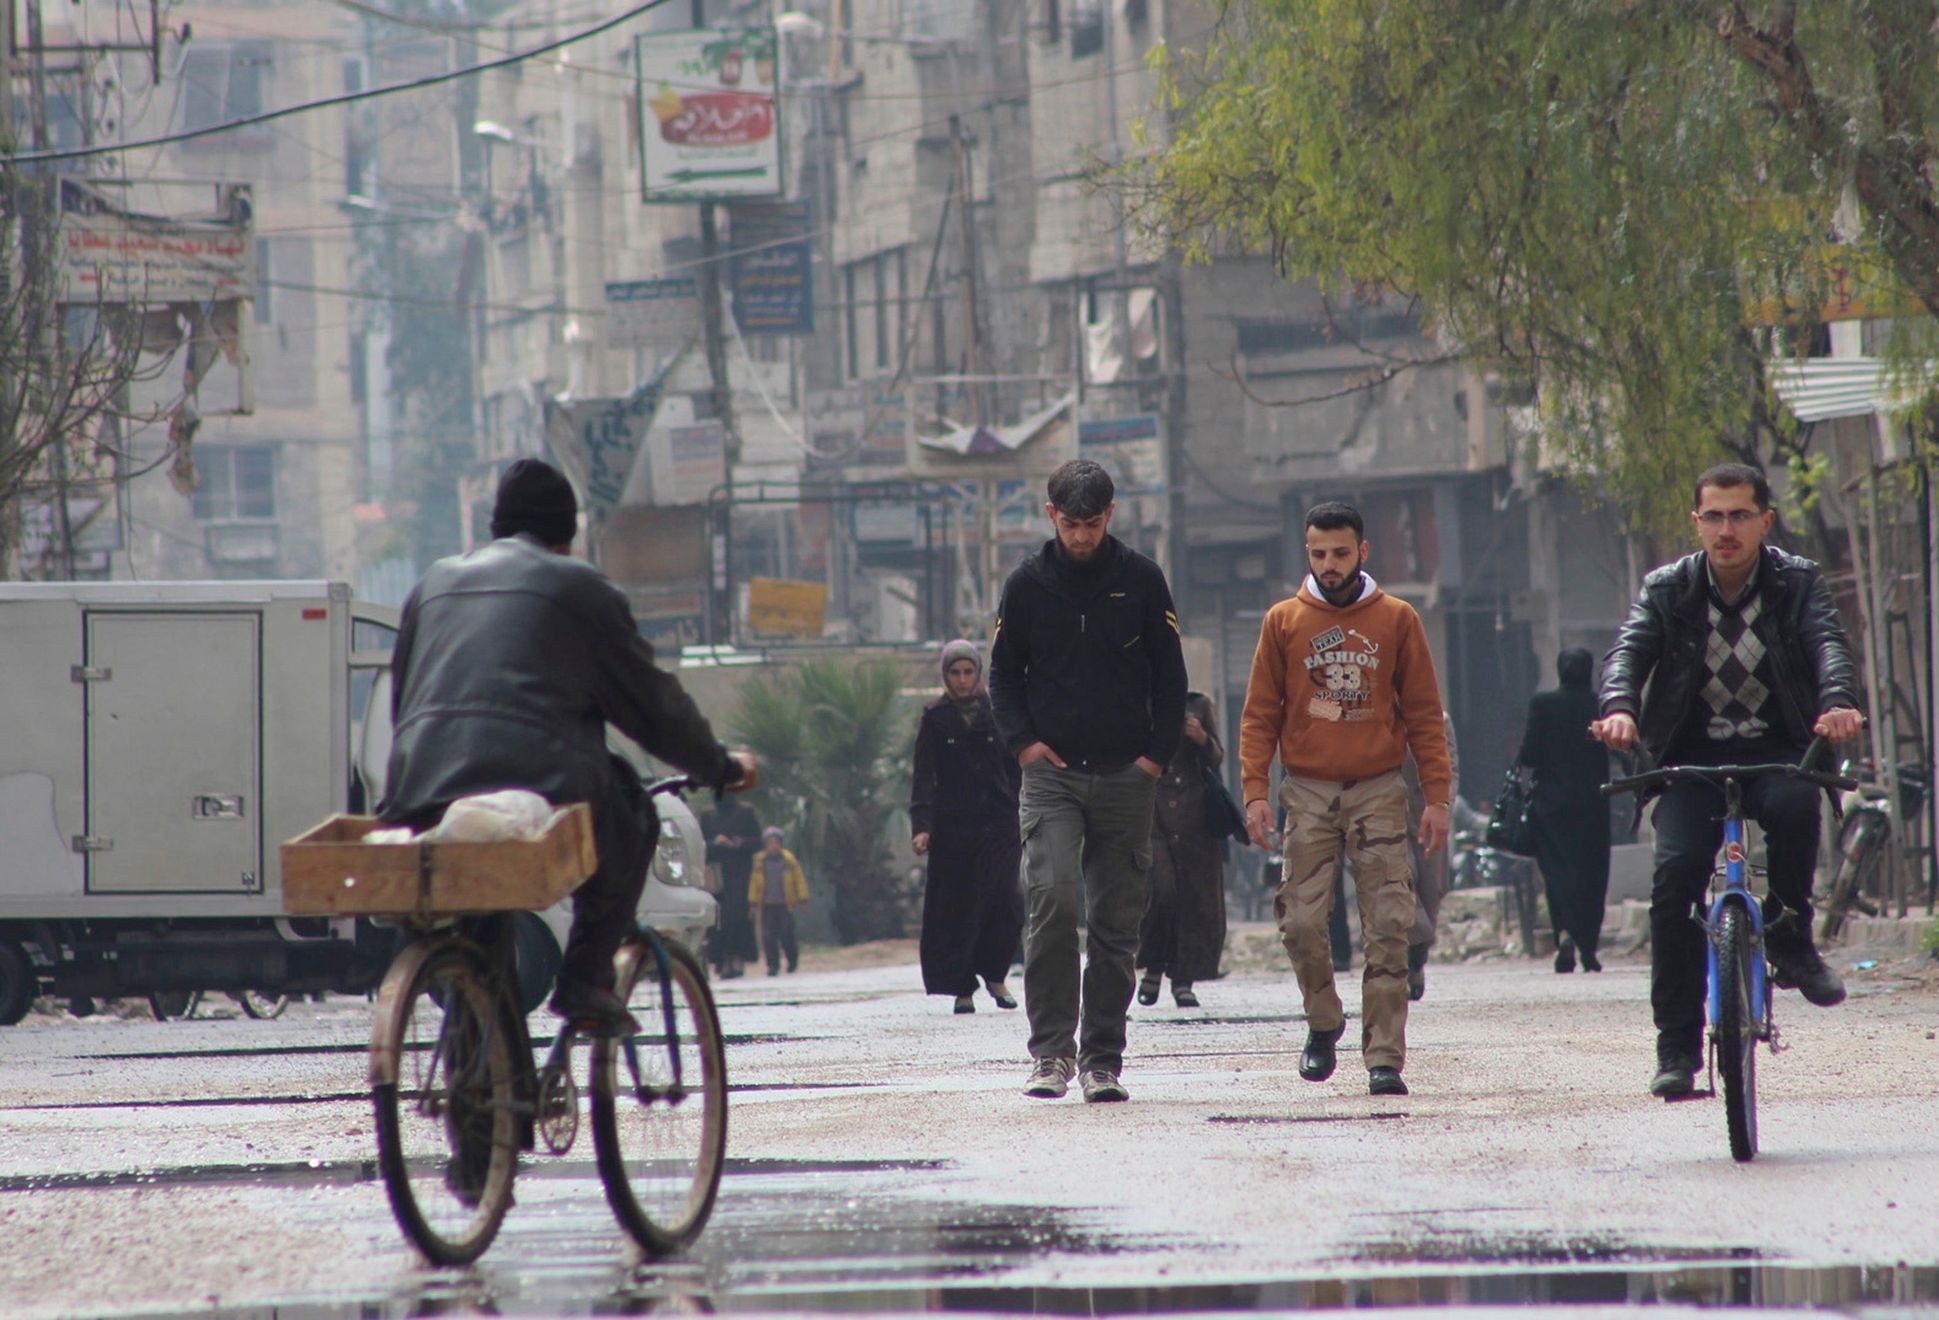 Ghouta, předměstí Damašku, březen 2014